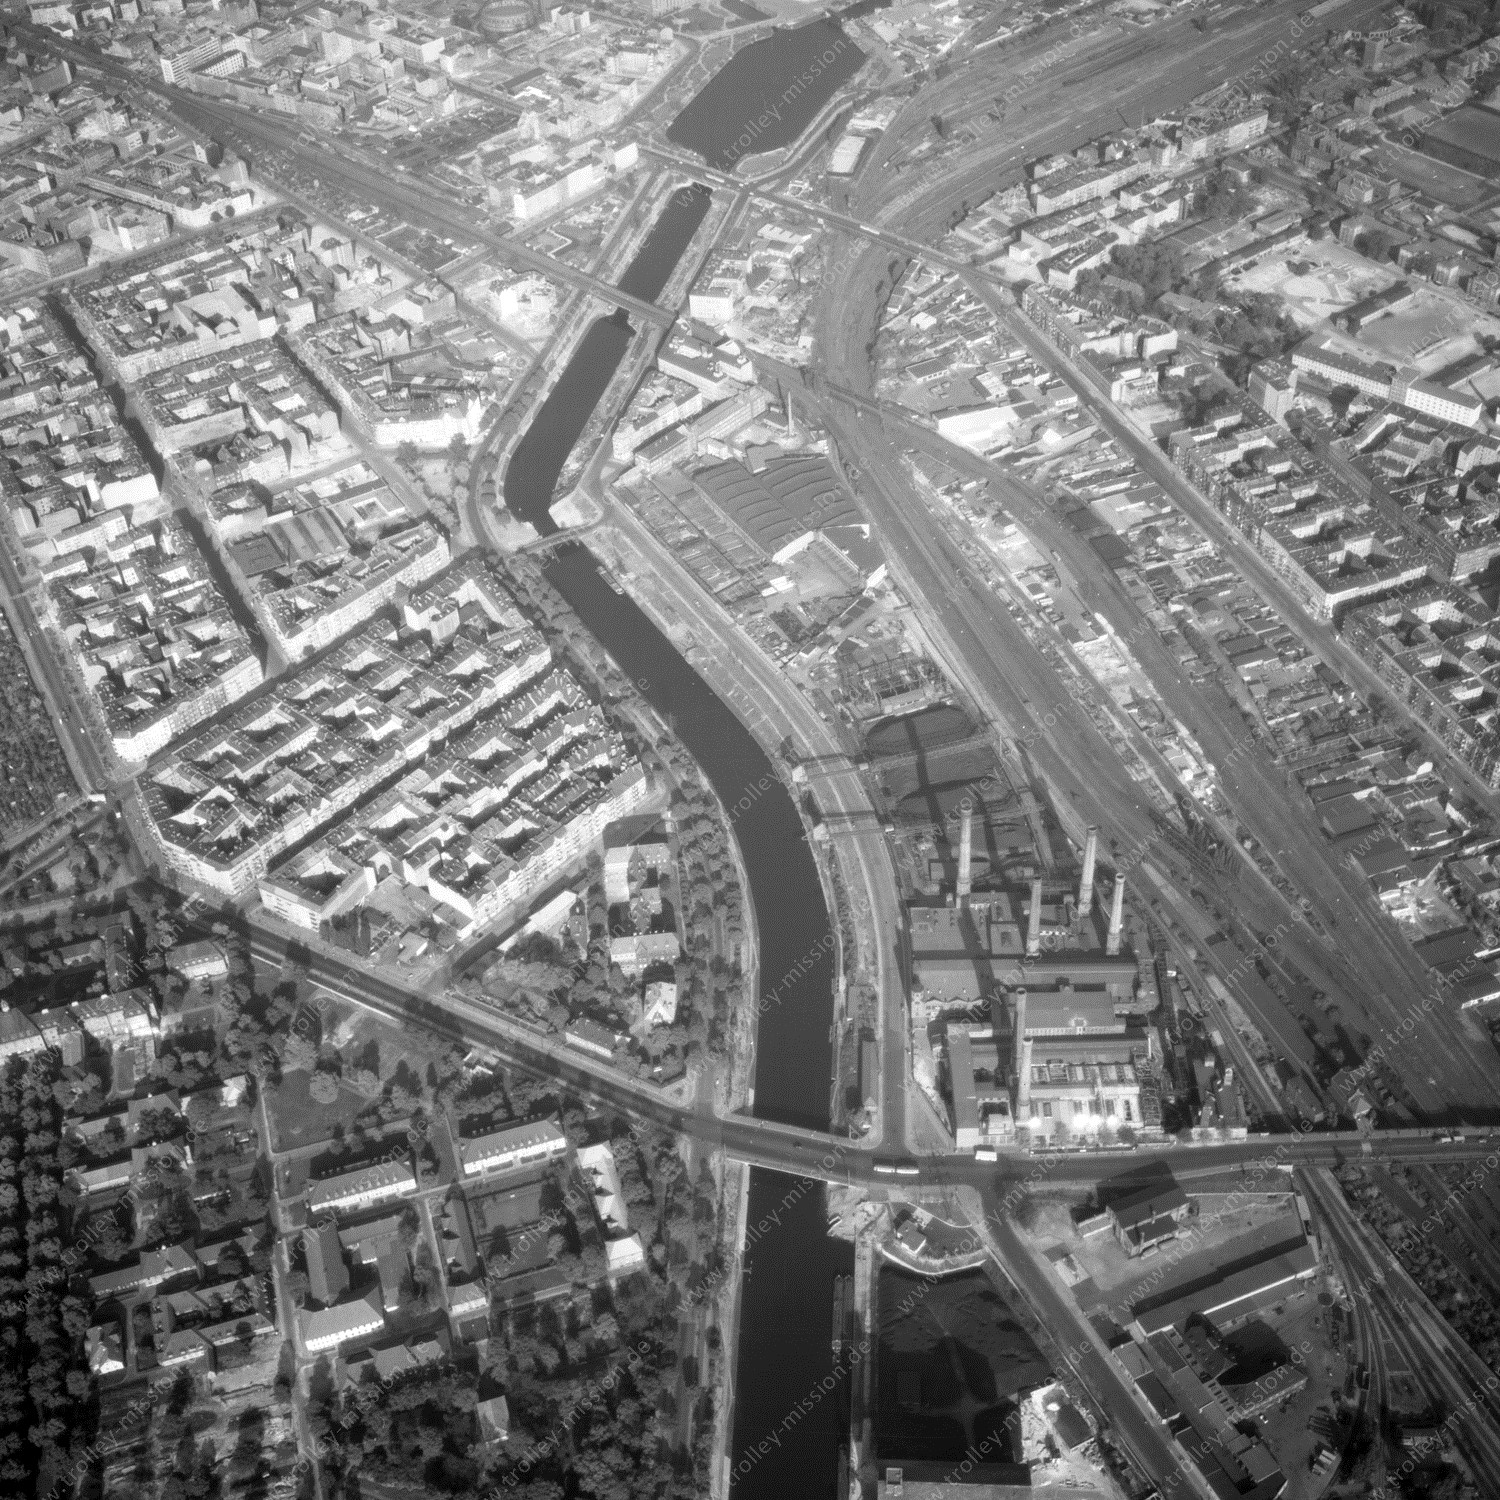 Alte Fotos und Luftbilder von Berlin - Luftbildaufnahme Nr. 06 - Historische Luftaufnahmen von West-Berlin aus dem Jahr 1954 - Flugstrecke Oscar